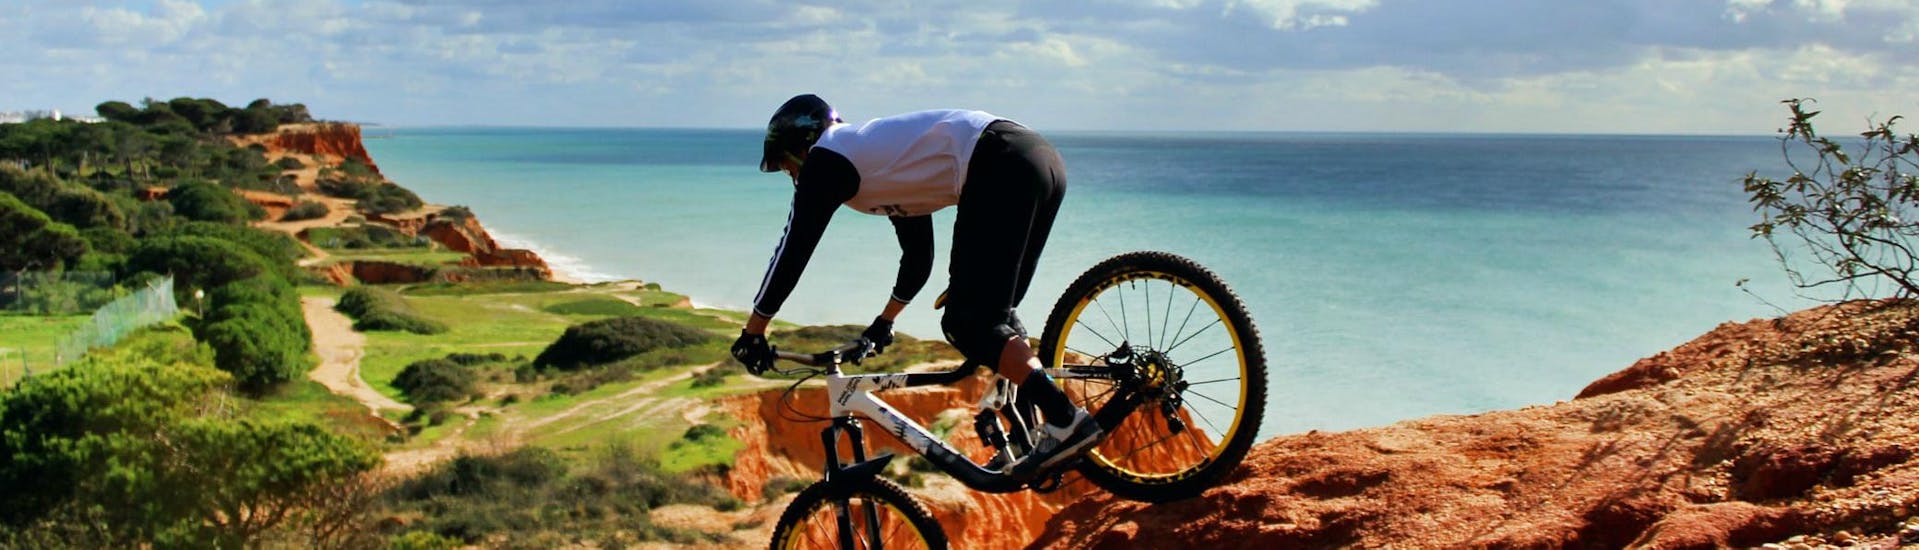 Mountain Bike Day Tour - Algarve.